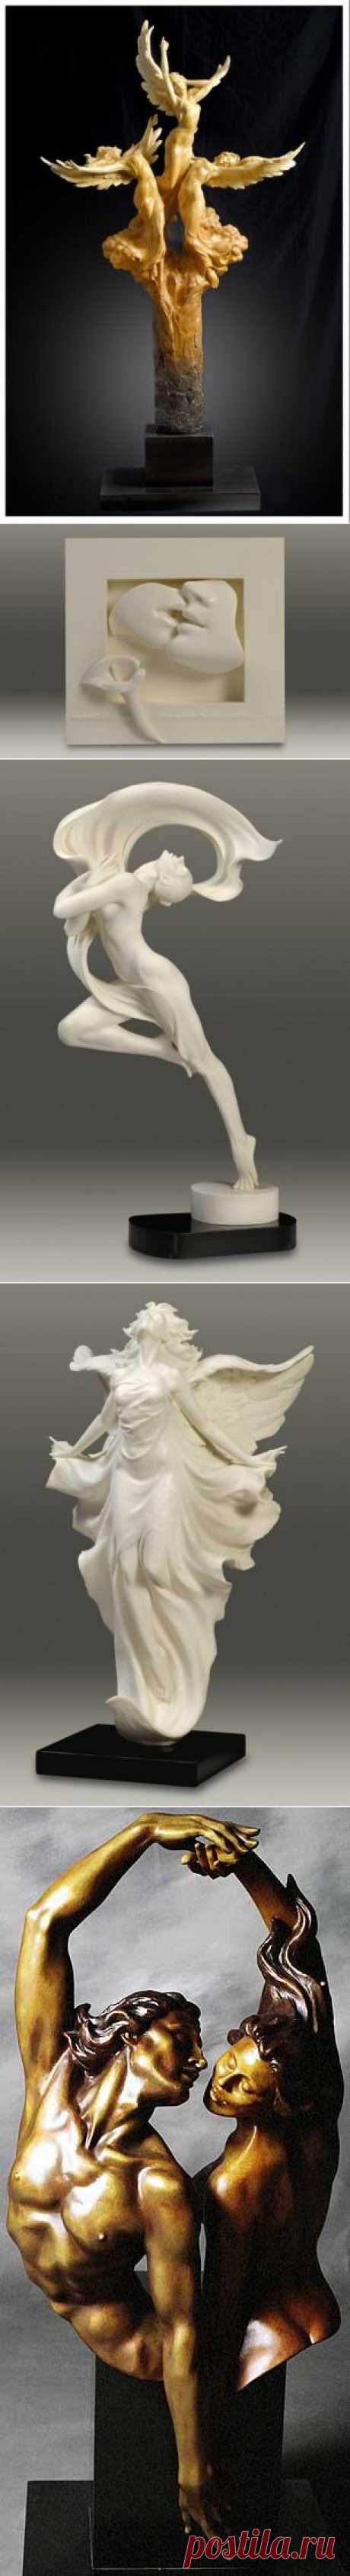 Скульптуры Гейлорда Хо - эмоциональность и экспрессия.